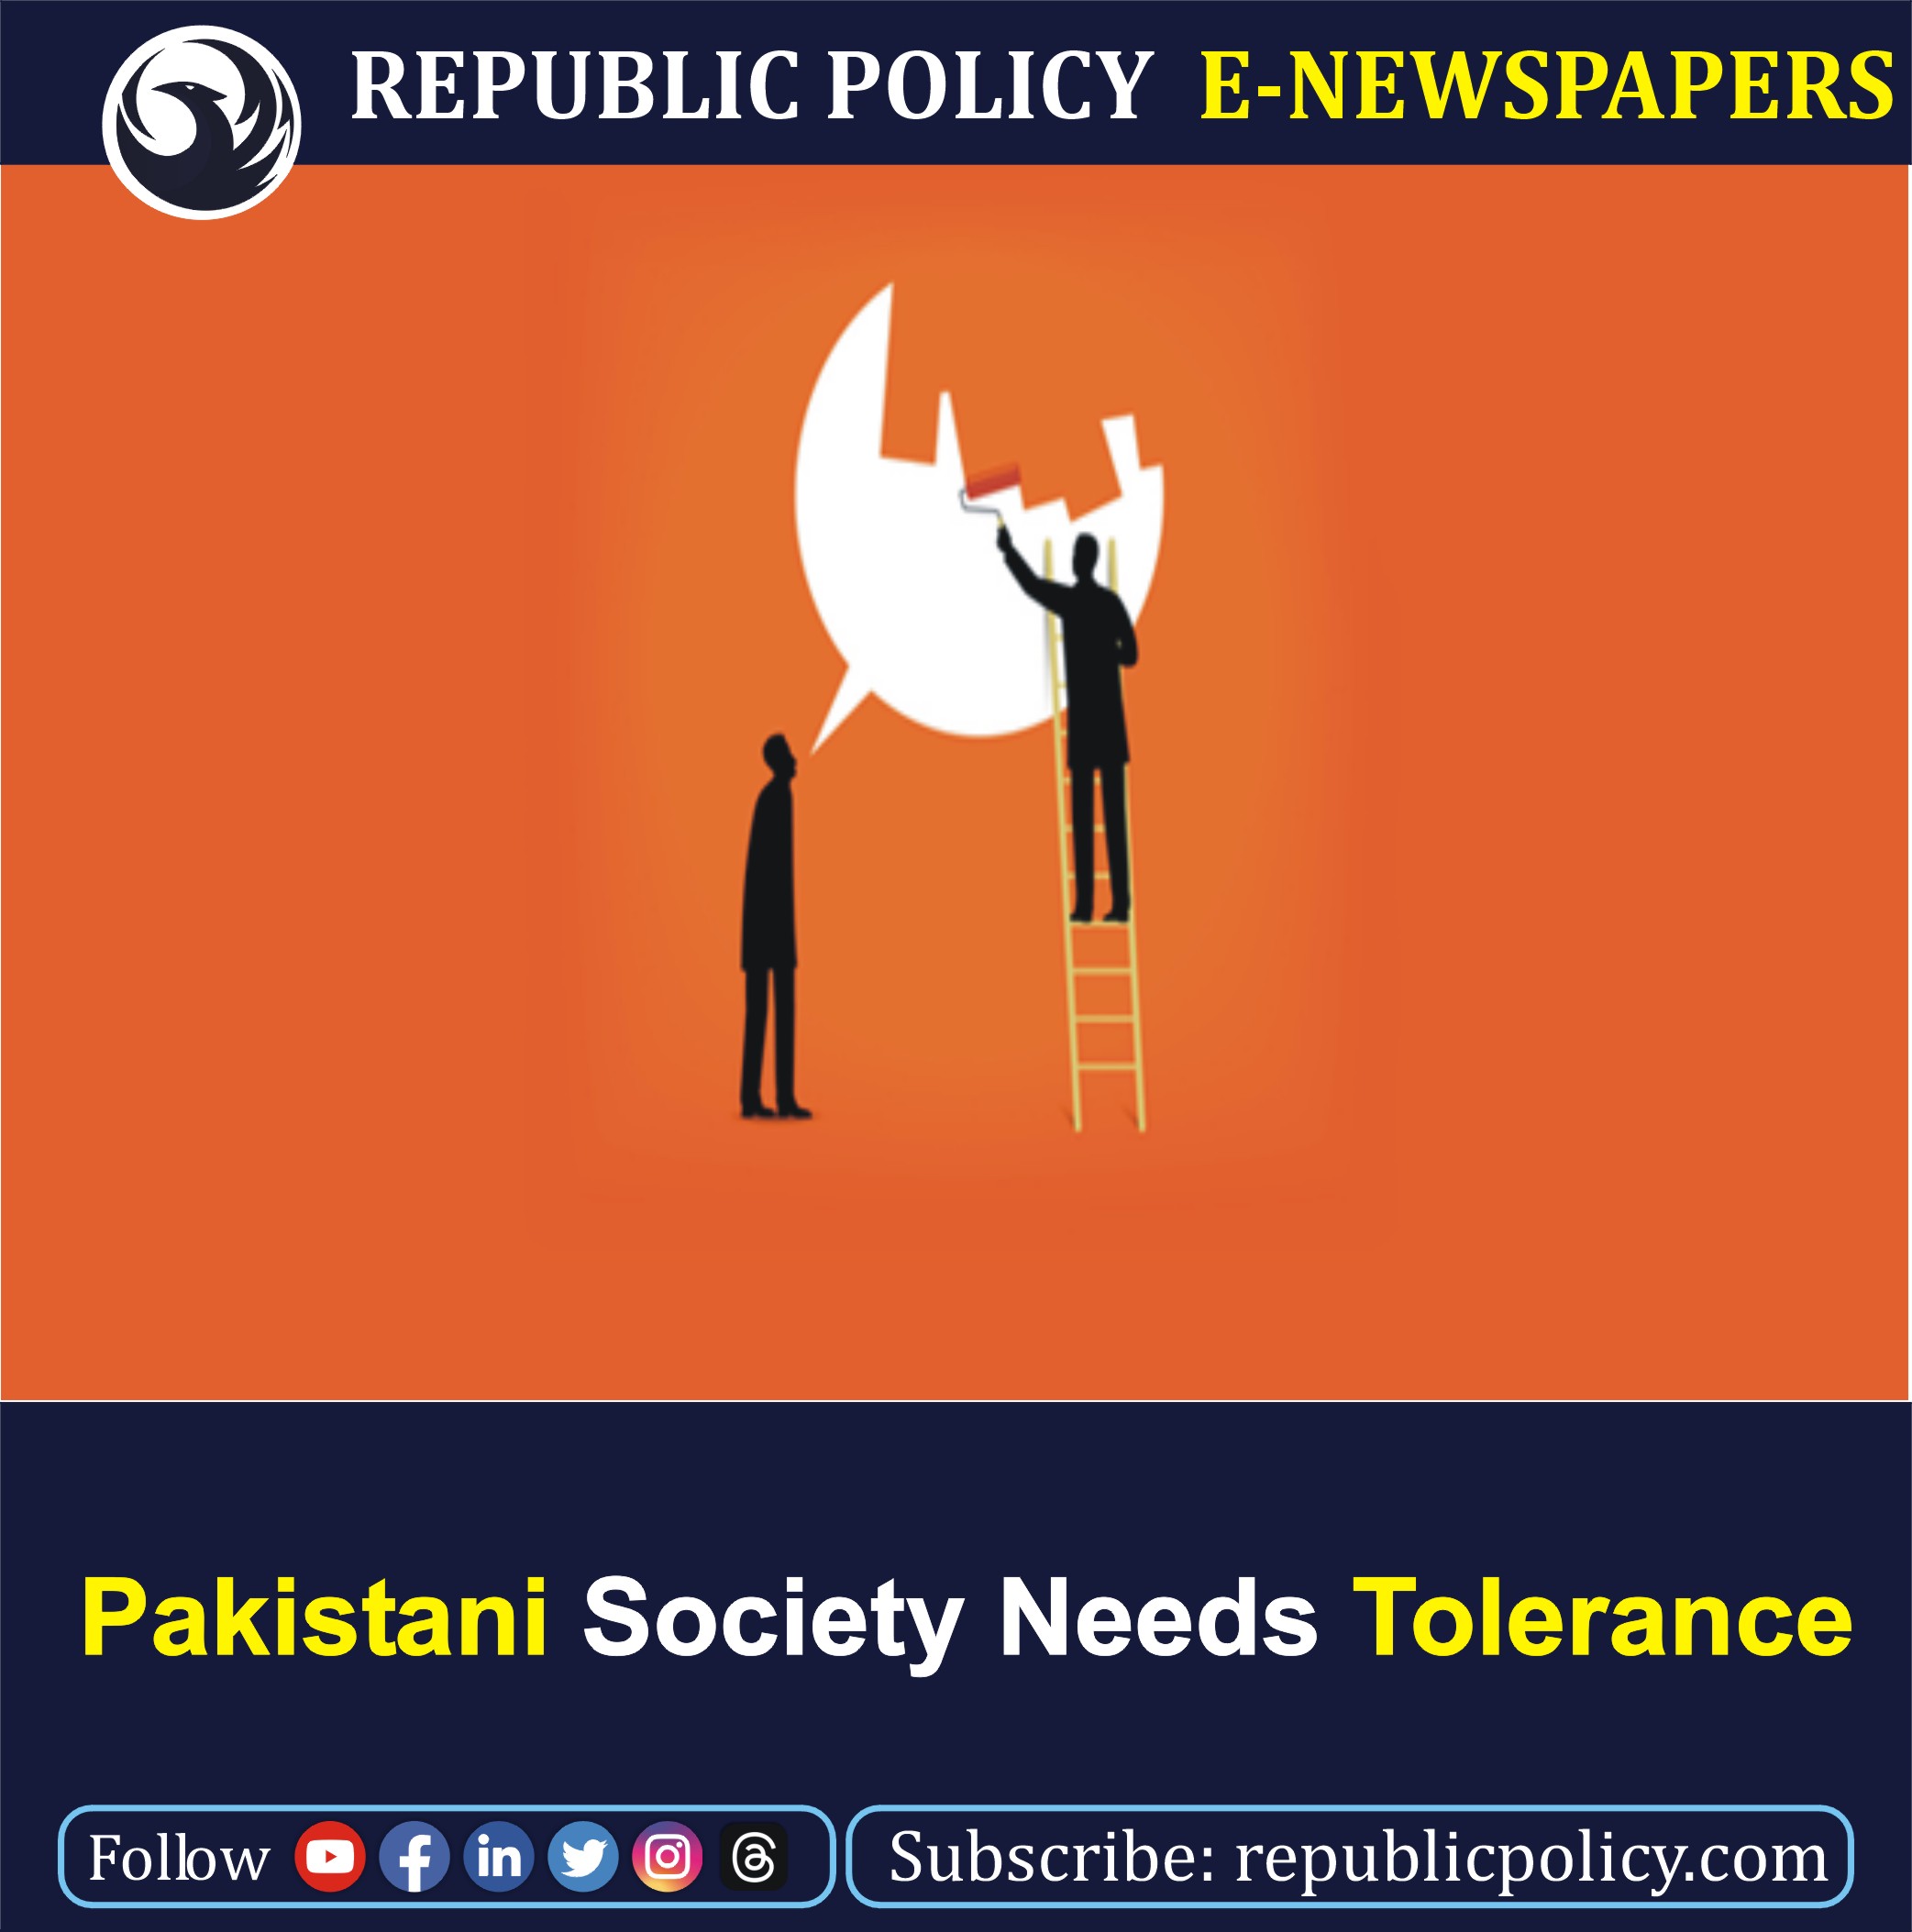 tolerance in pakistani society essay